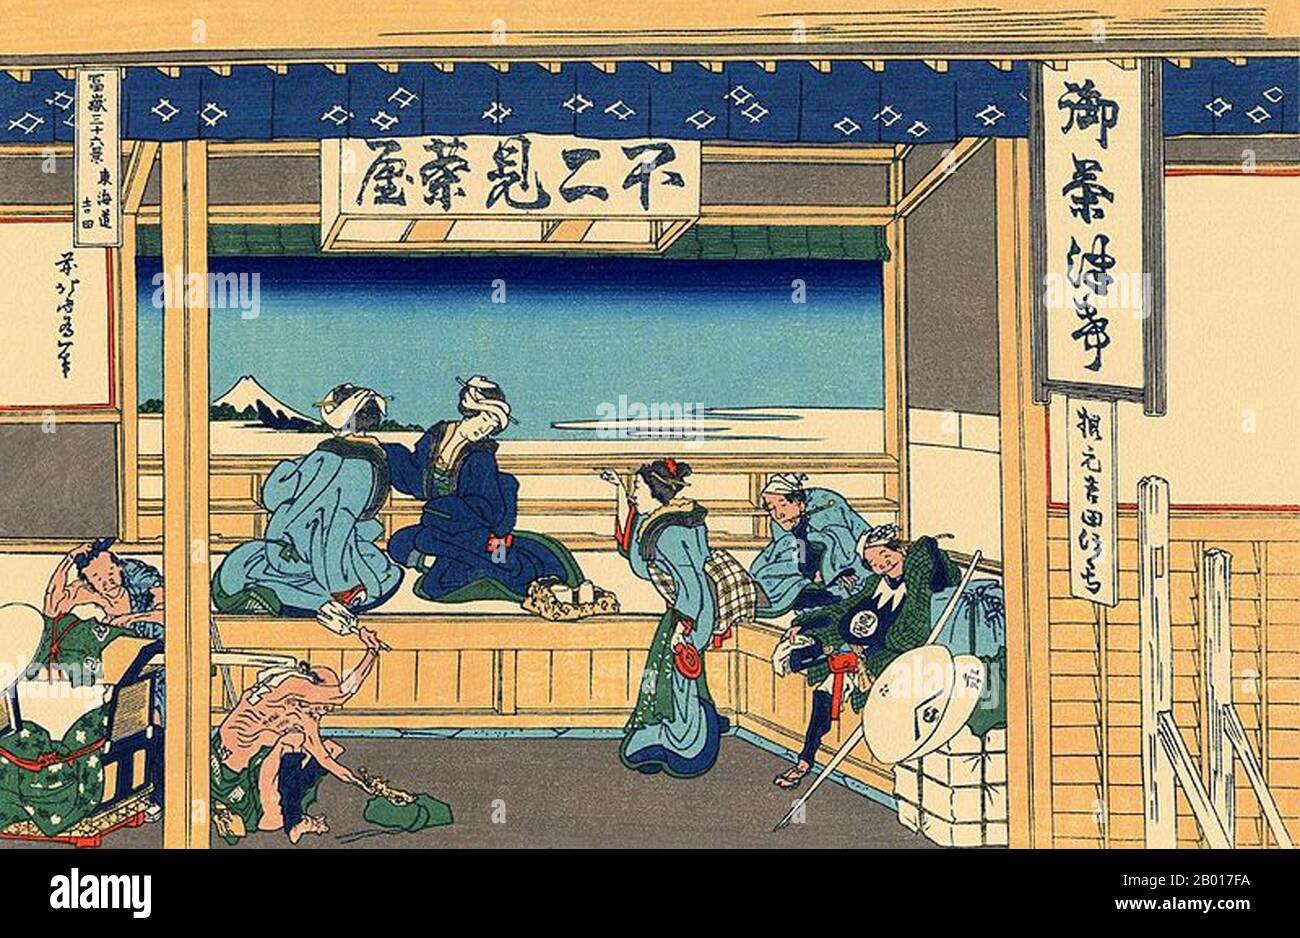 Japan: „Yoshida auf dem Tokaido“. Ukiyo-e Holzschnitt aus der Serie ‘Thirty-Six views of Mount Fuji’ von Katsushika Hokusai (31. Oktober 1760 - 10. Mai 1849), 1830. ‘Thirty-Six Views of Mount Fuji’ ist eine Serie von Holzschnitten der japanischen Künstlerin Katsushika Hokusai, die „Sukiyo-e“ ‘. Die Serie zeigt den Fuji in unterschiedlichen Jahreszeiten und Wetterbedingungen an verschiedenen Orten und Entfernungen. Es besteht tatsächlich aus 46 Drucken, die zwischen 1826 und 1833 entstanden sind. Die ersten 36 wurden in die Originalpublikation aufgenommen, und aufgrund ihrer Popularität wurden nach der Originalpublikation 10 weitere hinzugefügt. Stockfoto